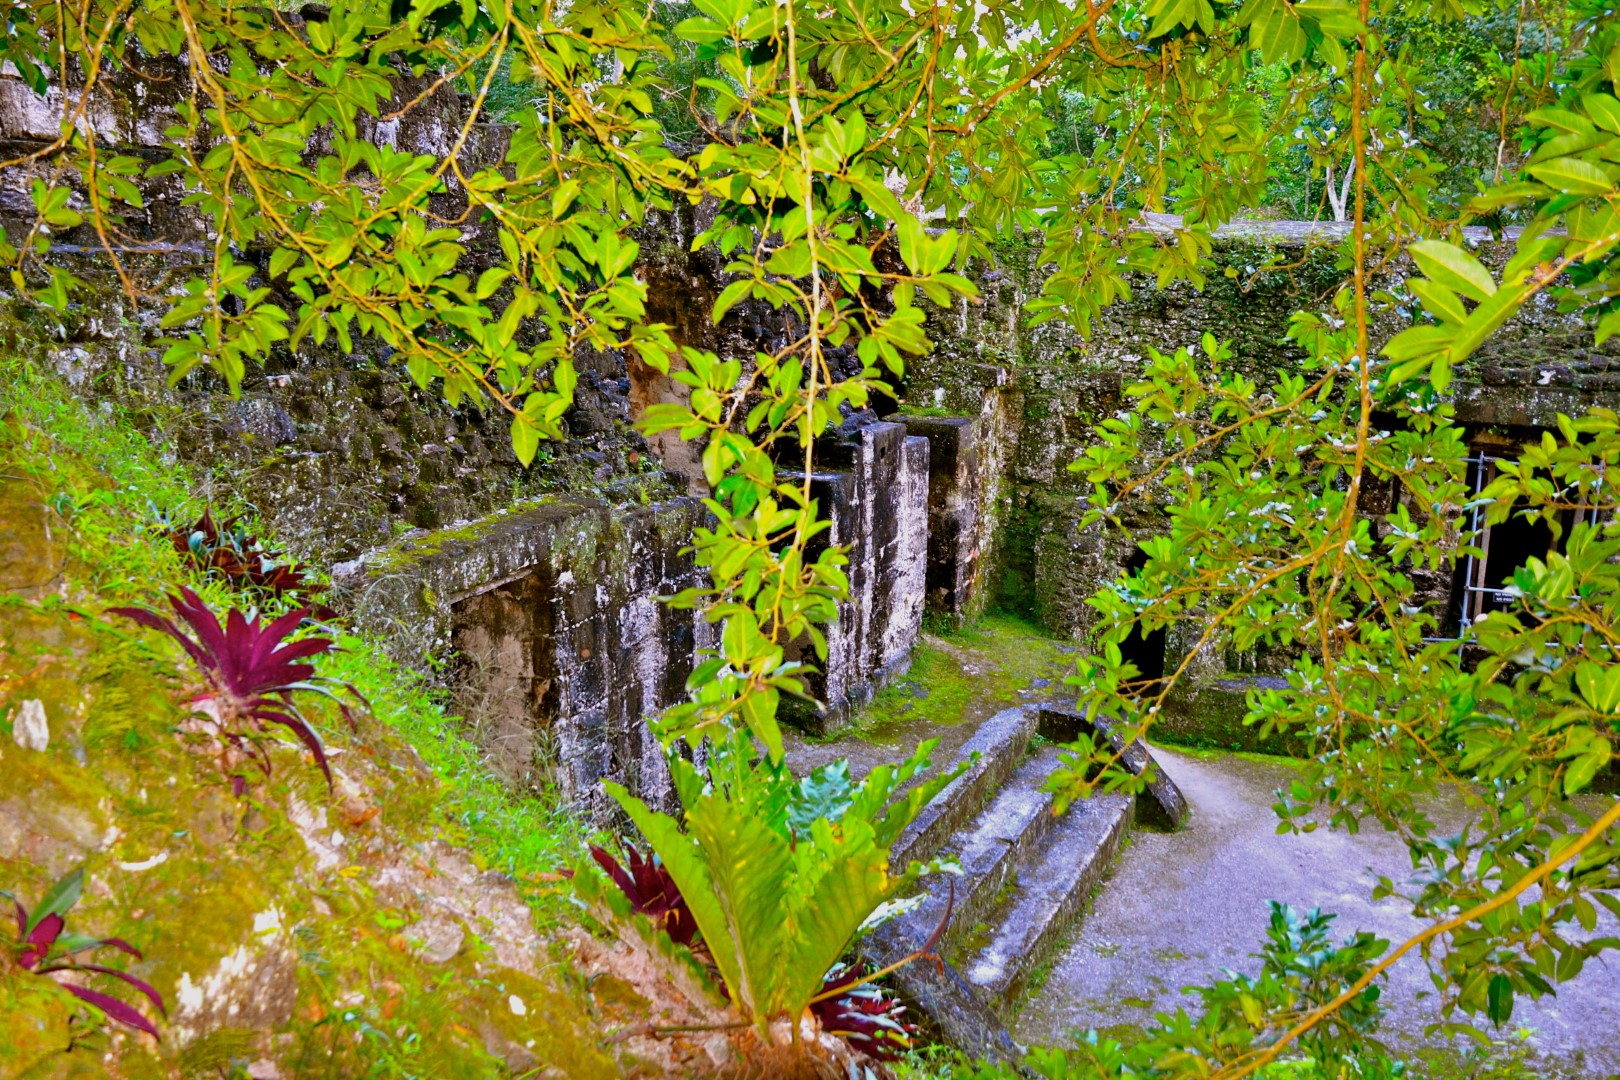 Mayan ruins in dense vegetation at Tikal, Guatemala